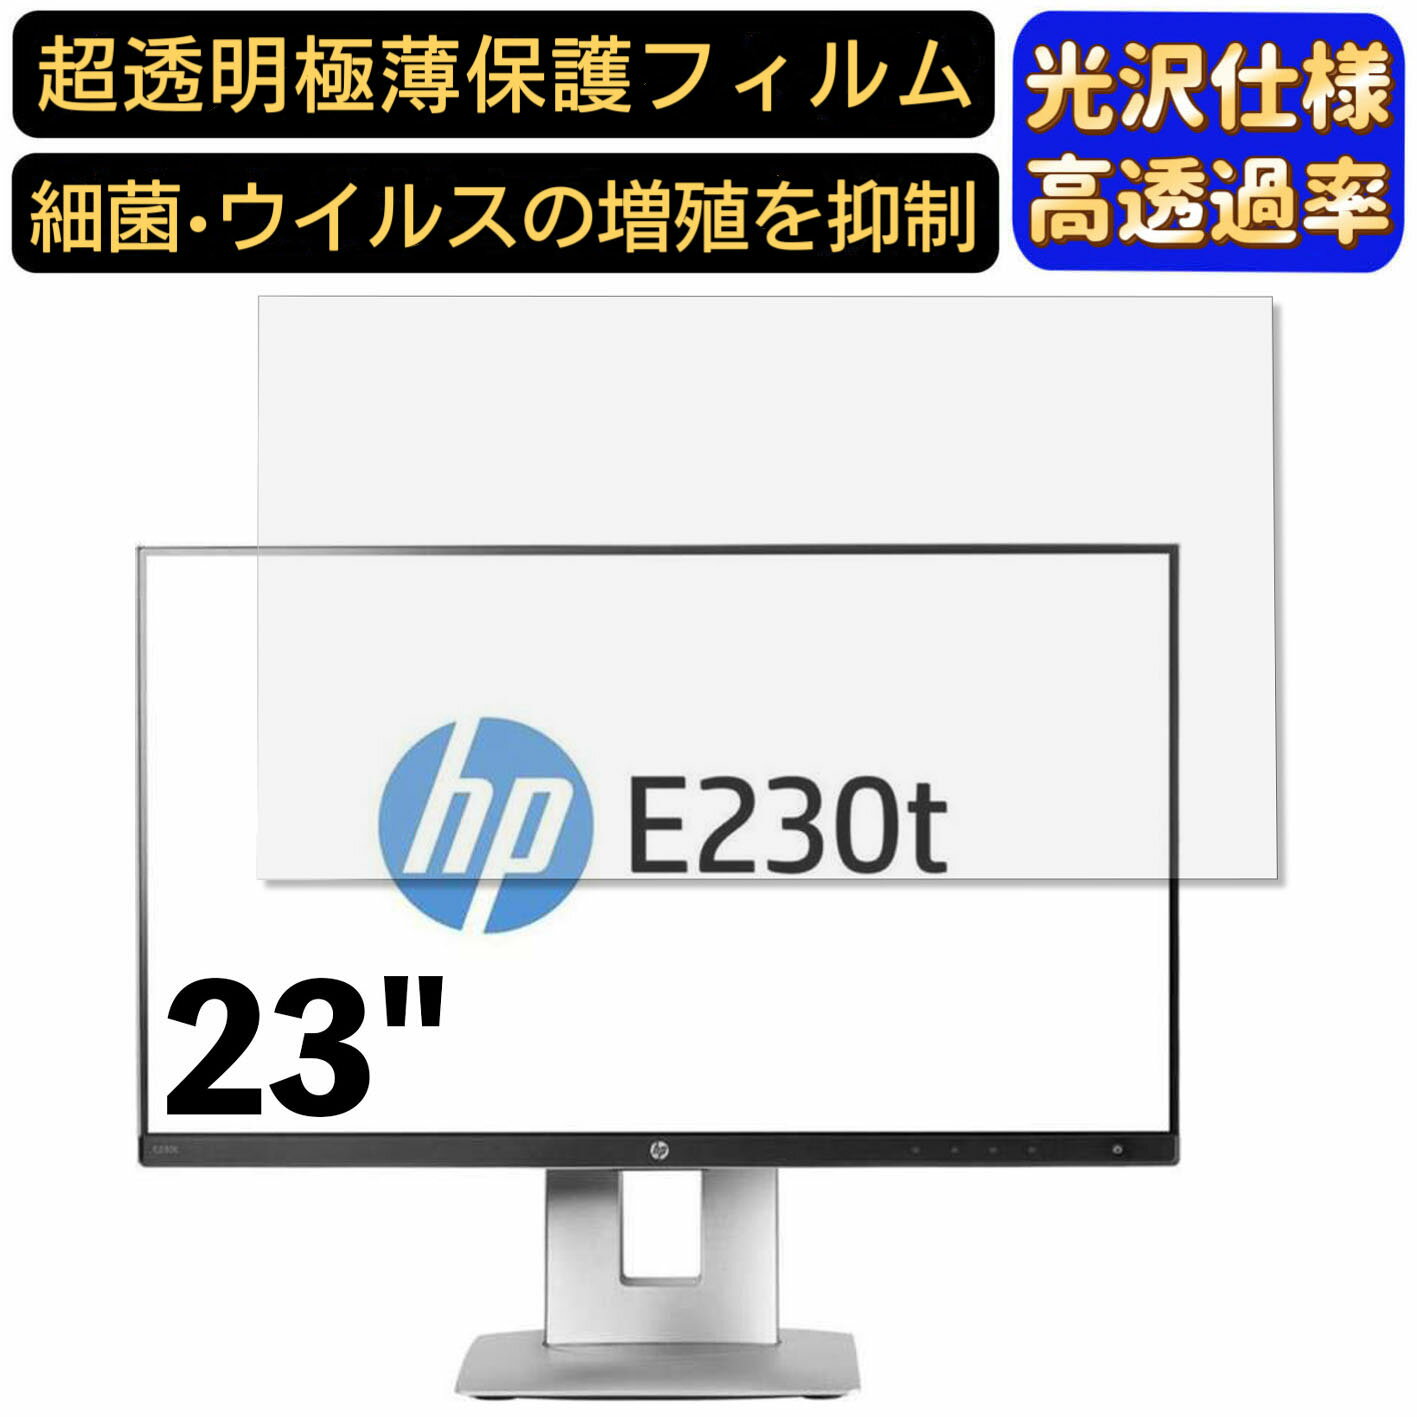 【ポイント2倍】HP EliteDisplay E230t 23